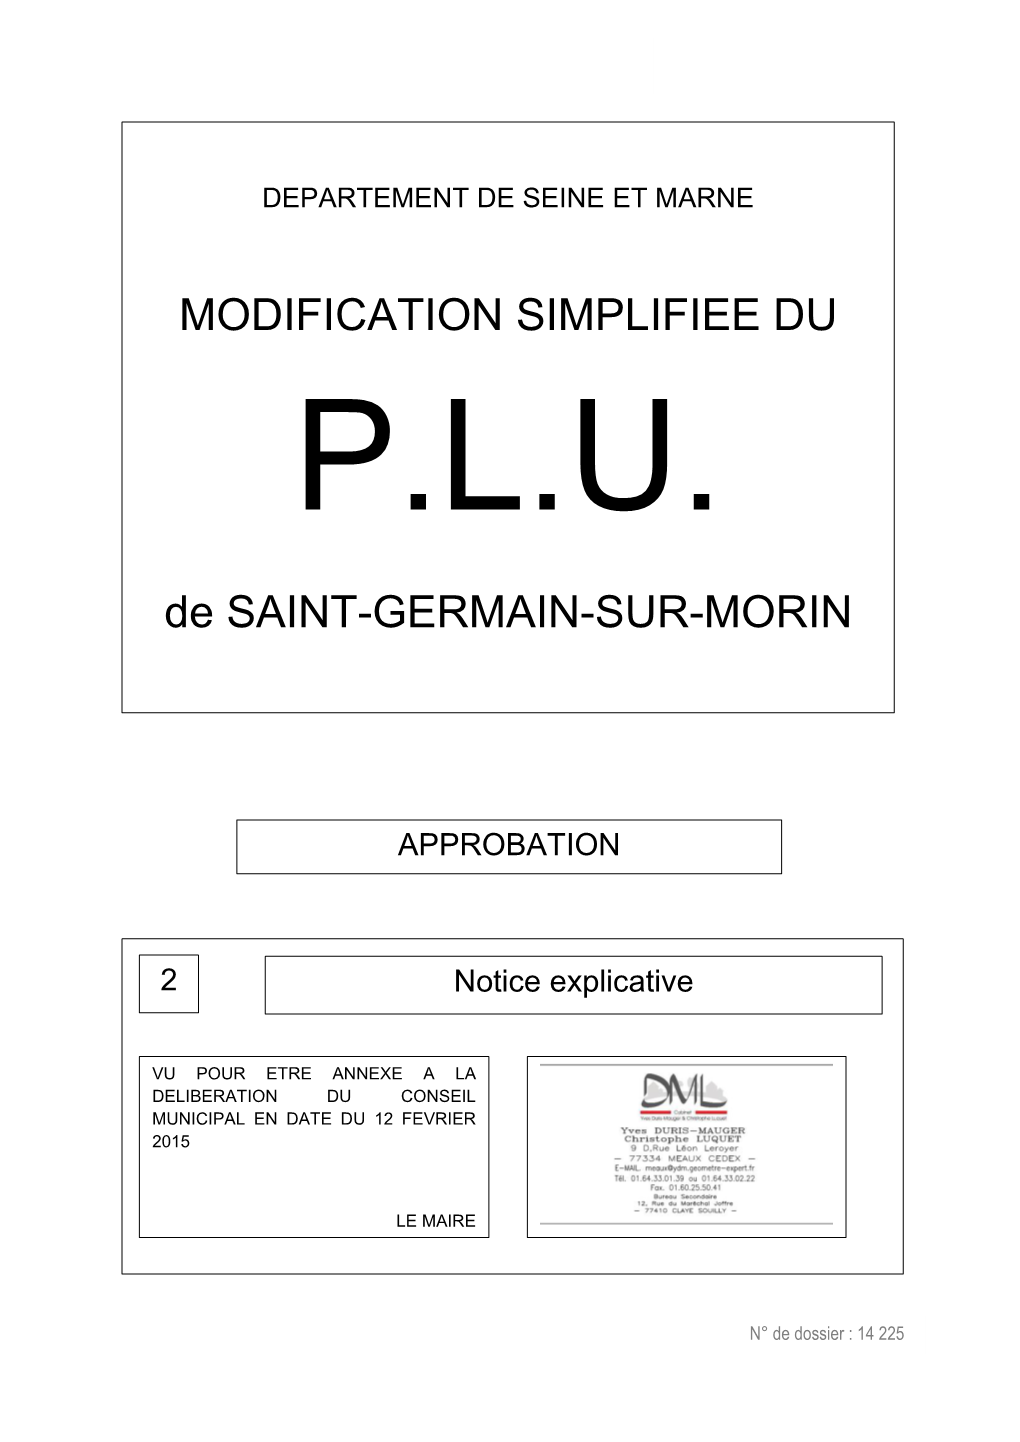 MODIFICATION SIMPLIFIEE DU De SAINT-GERMAIN-SUR-MORIN